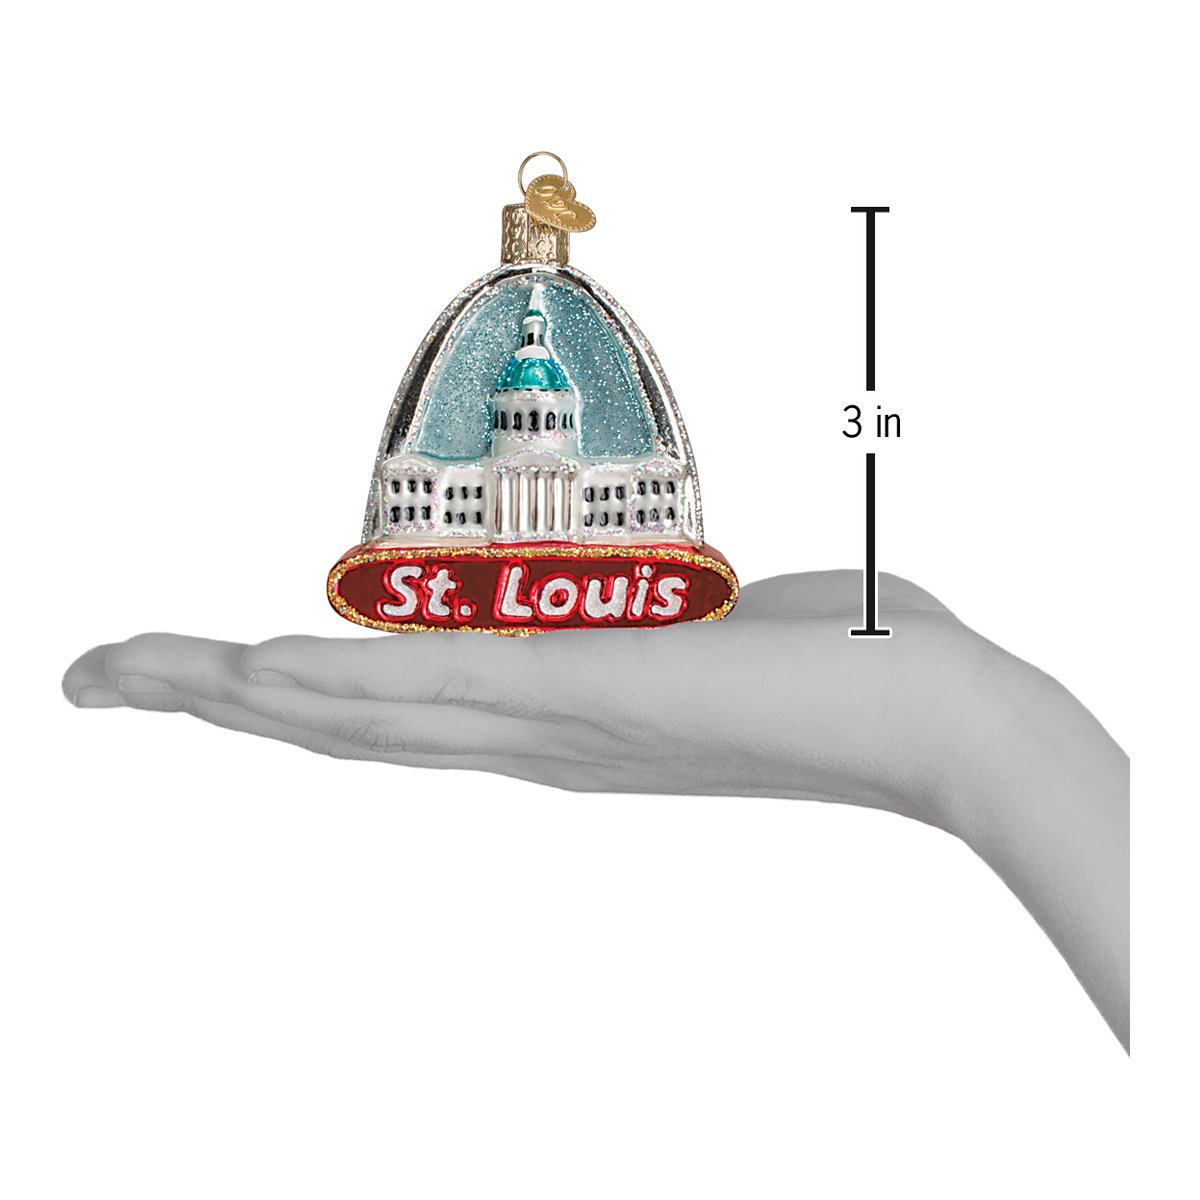 St. Louis Arch Ornament